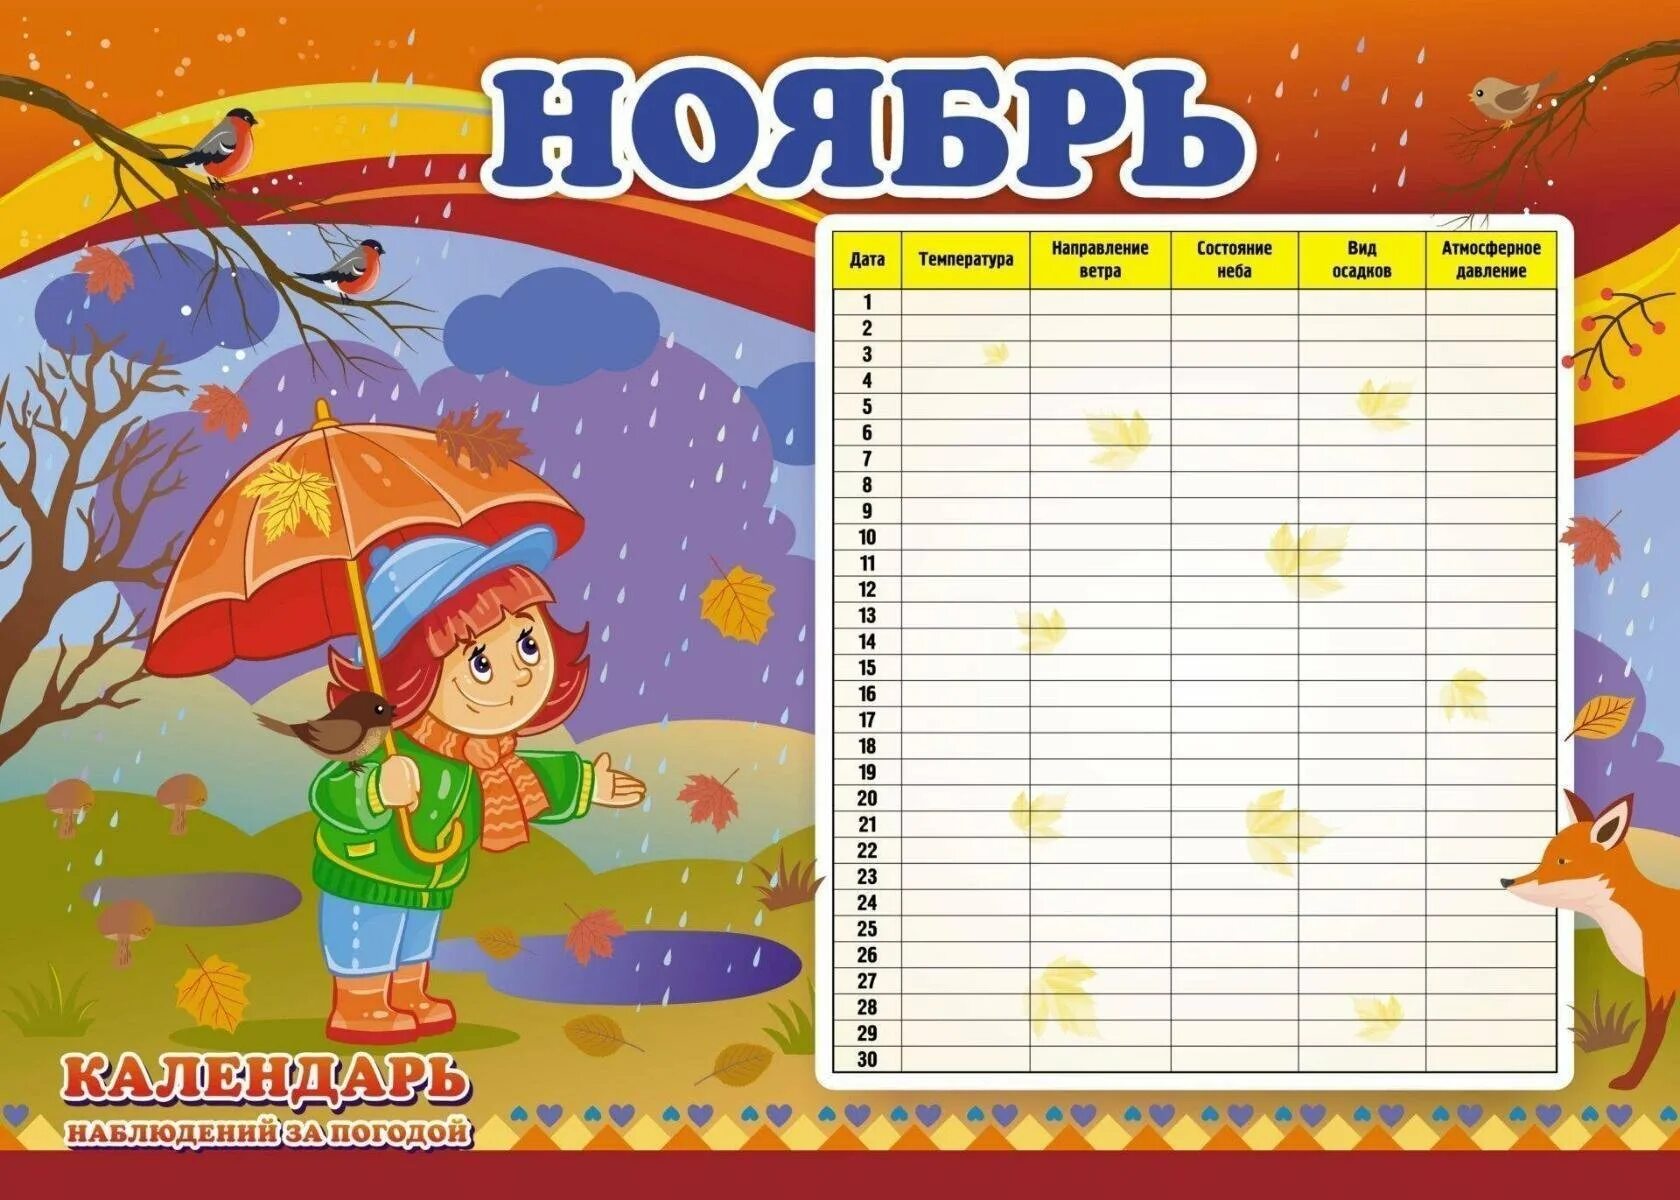 Наблюдение за погодой в подготовительной группе. Календарь наблюдений за погодой. Календарь наблюдений за природой. Rfktylfhm YF,K.ltybz PF ghbhjljq d ltncrjv CFLE. Календарь наблюдений в детском саду.